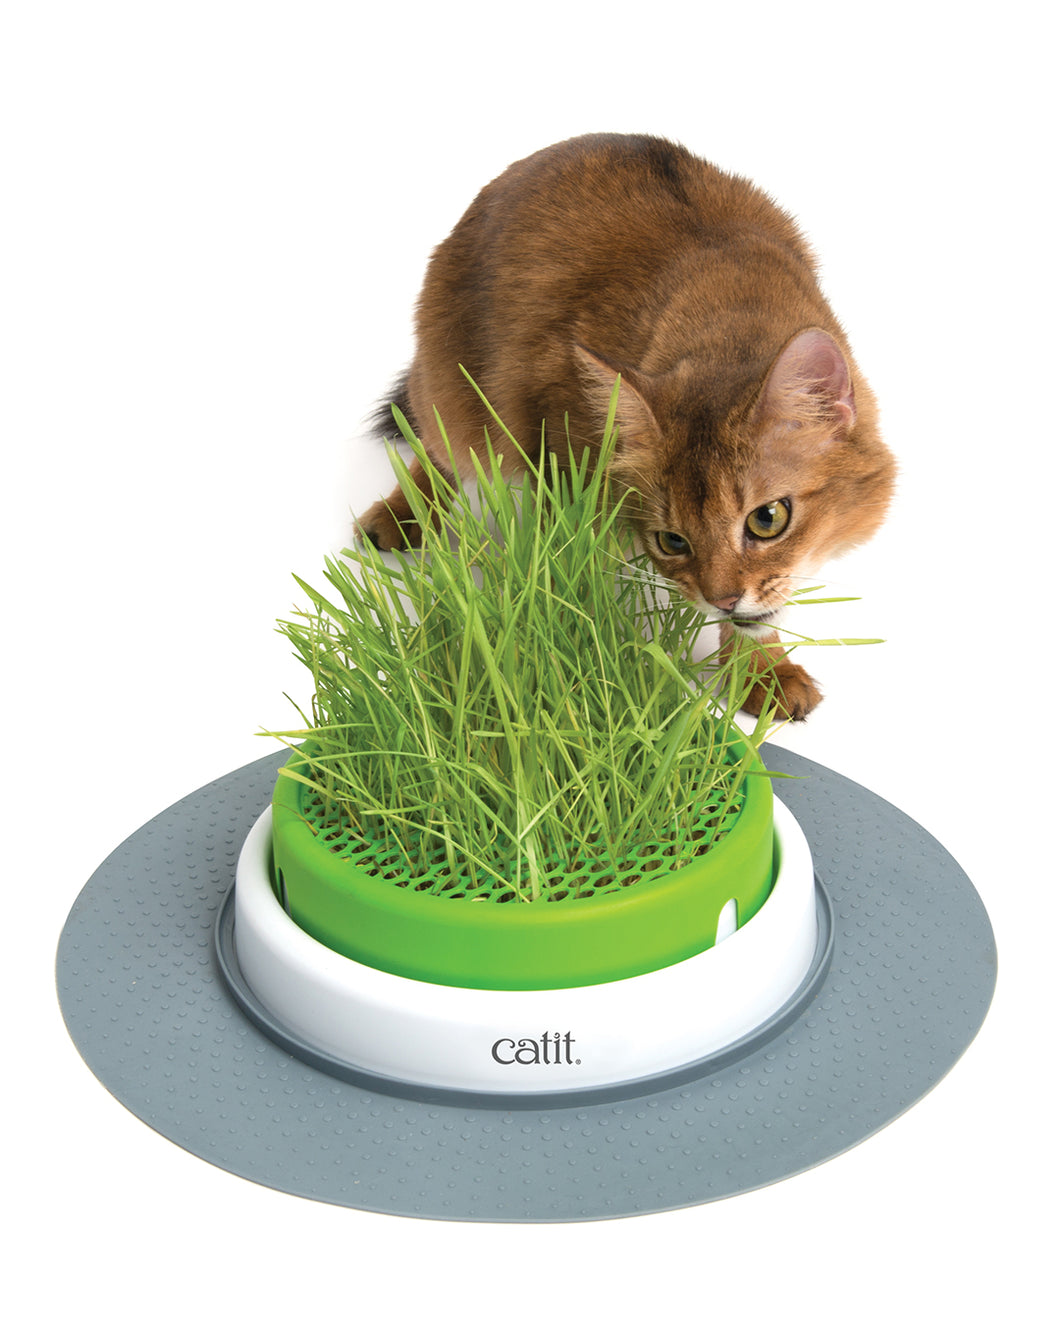 CAT GRASS PLANTER 2.0